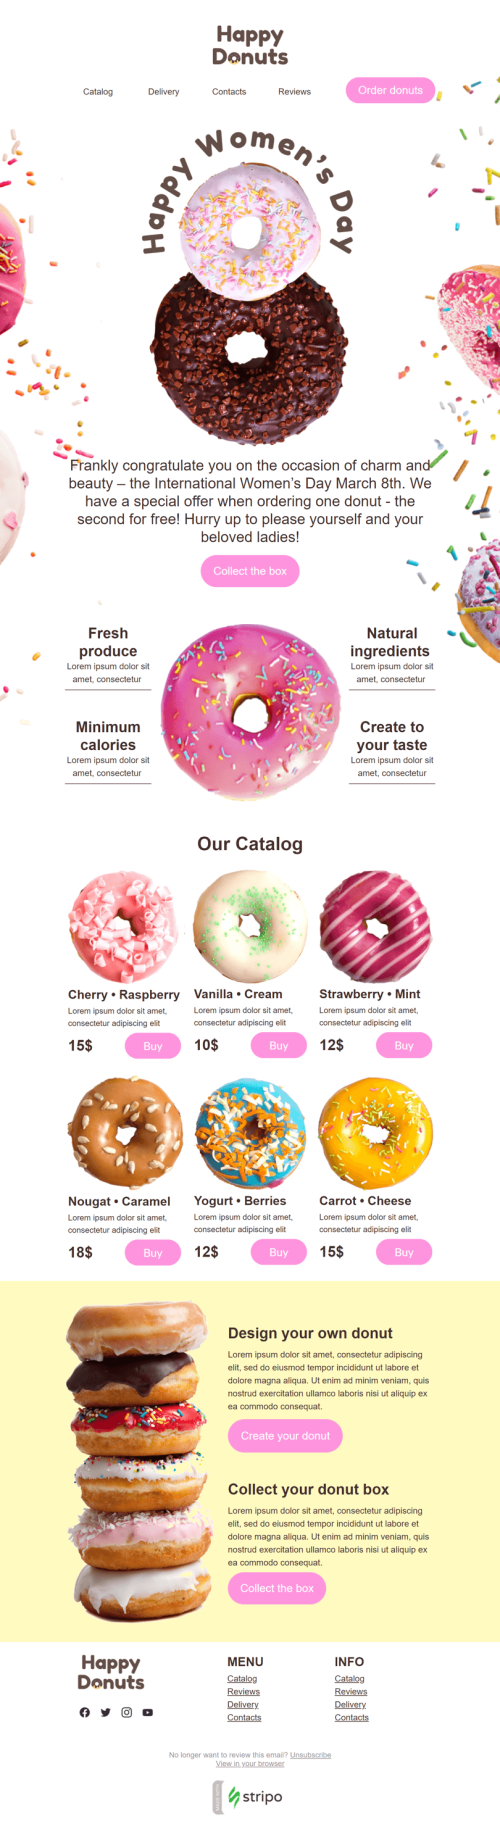 Weltfrauentag E-Mail-Vorlage «Glückliche Donuts» für Essen-Branche Ansicht auf Mobilgeräten